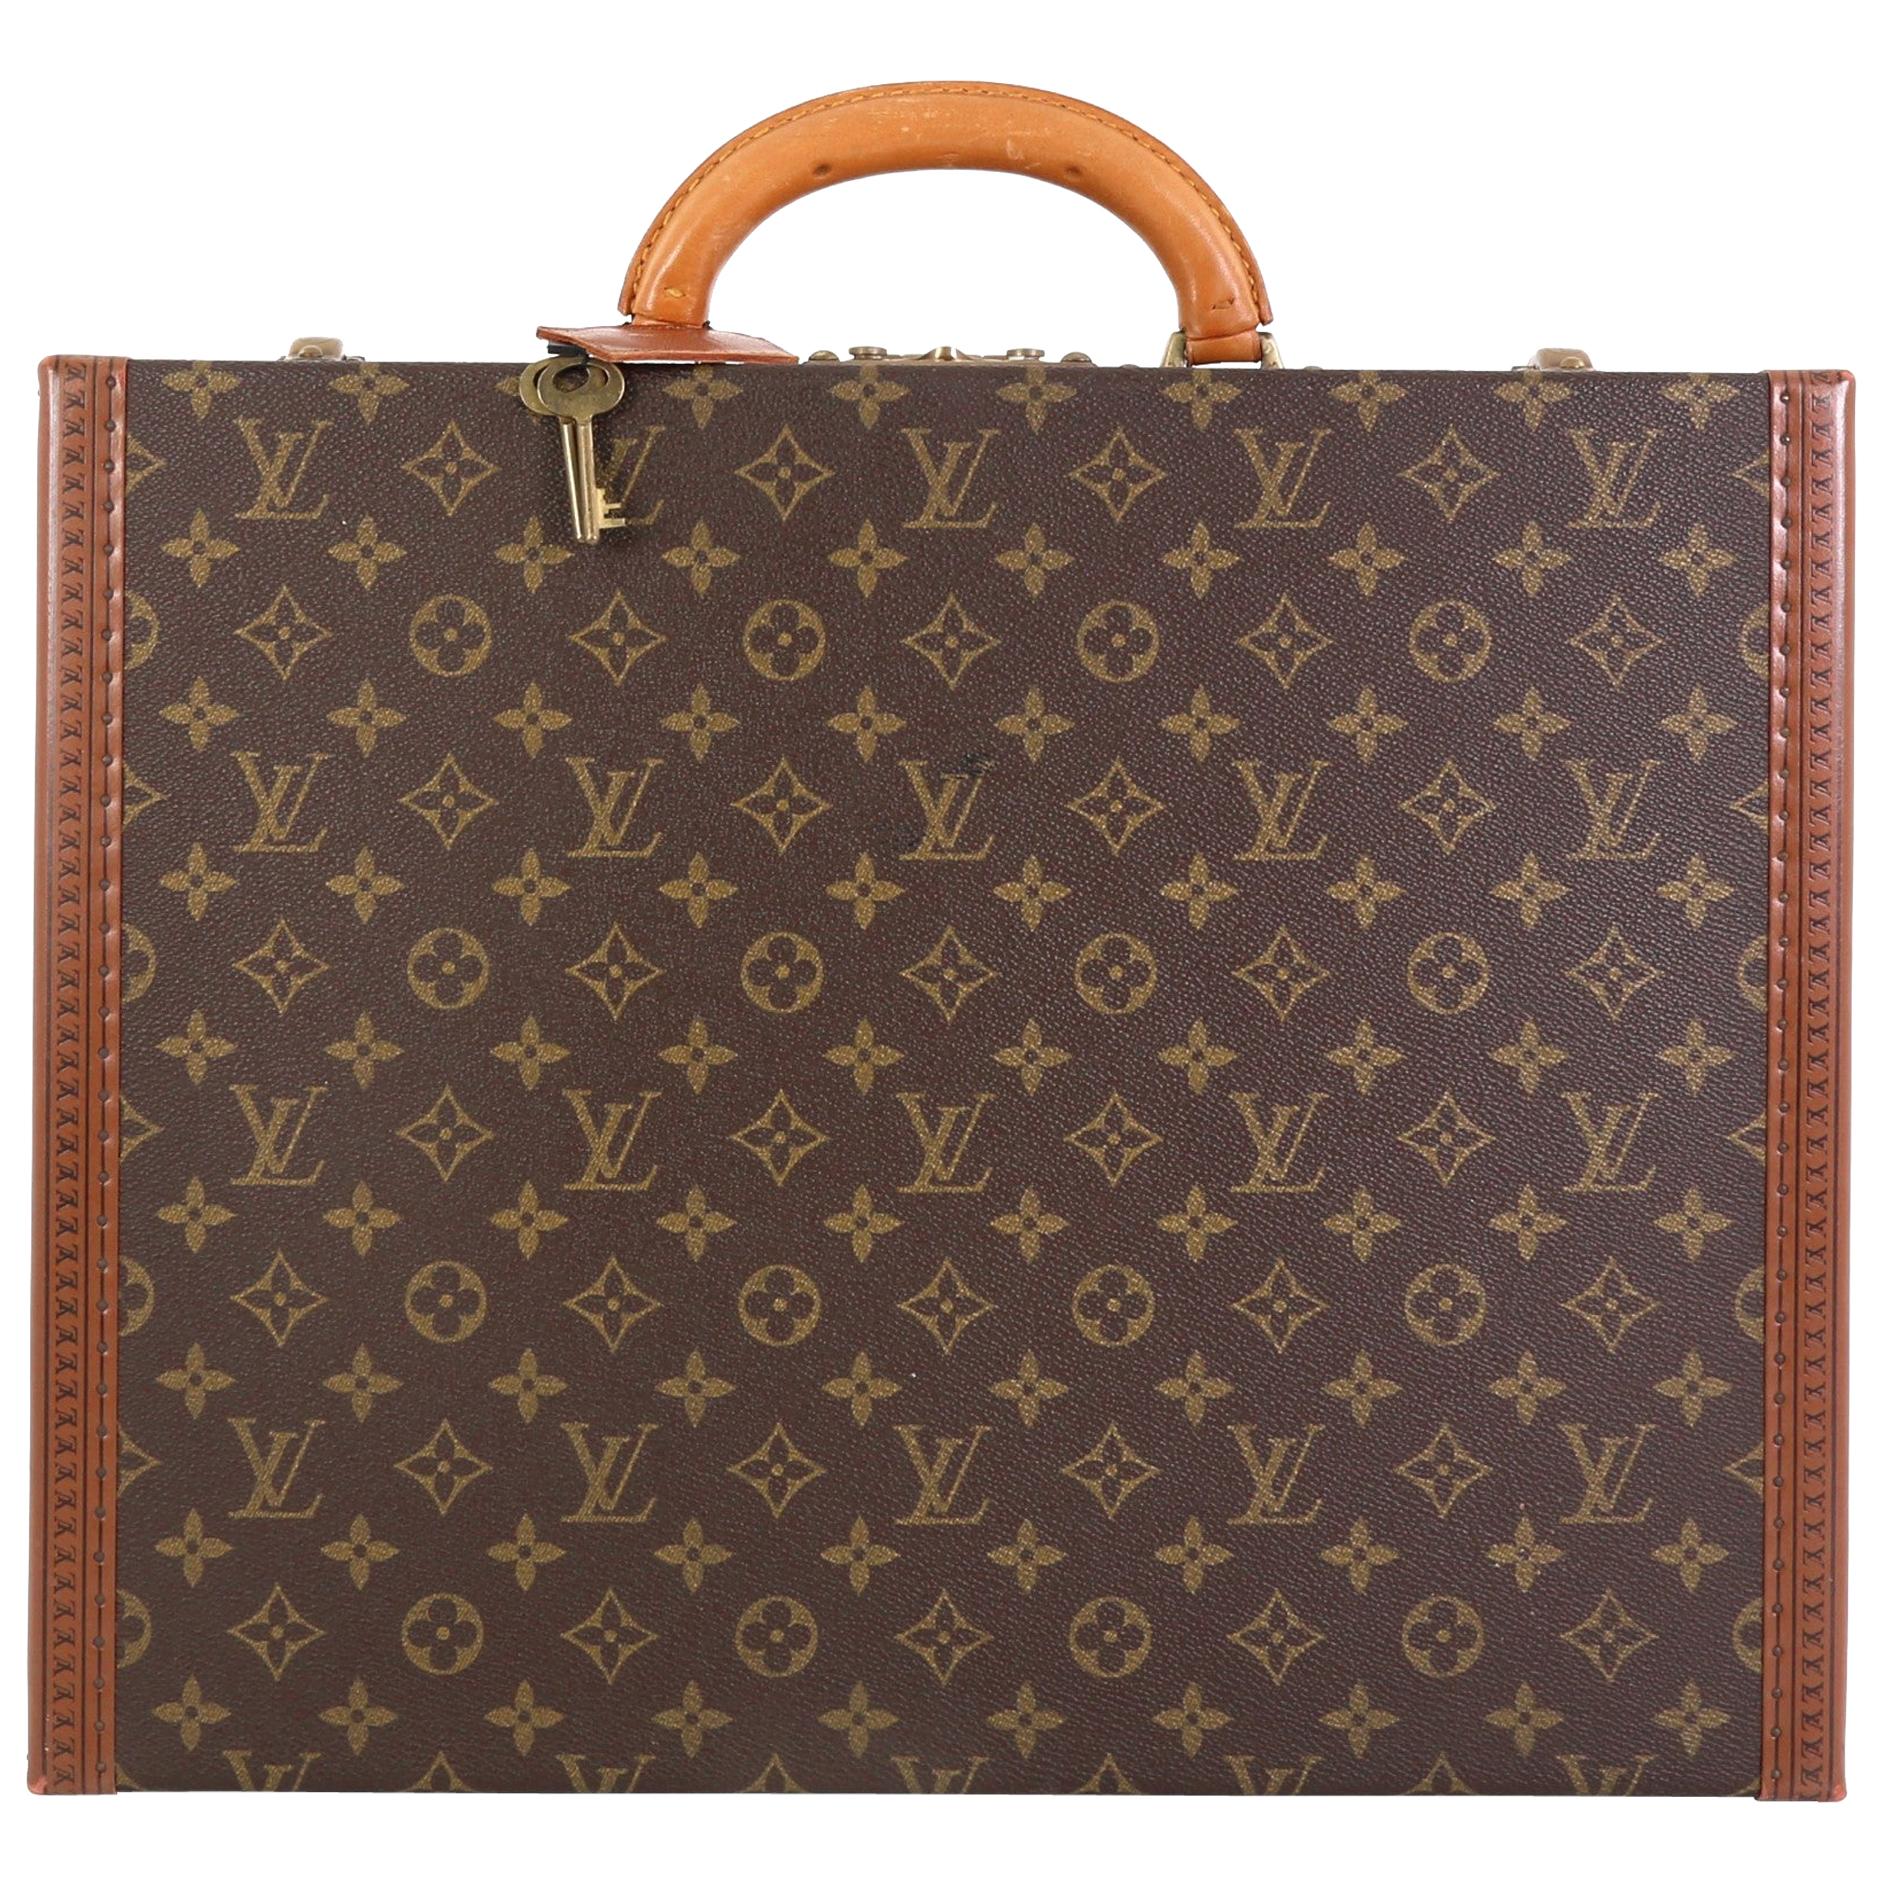 Louis Vuitton President Classeur Briefcase Monogram Canvas at